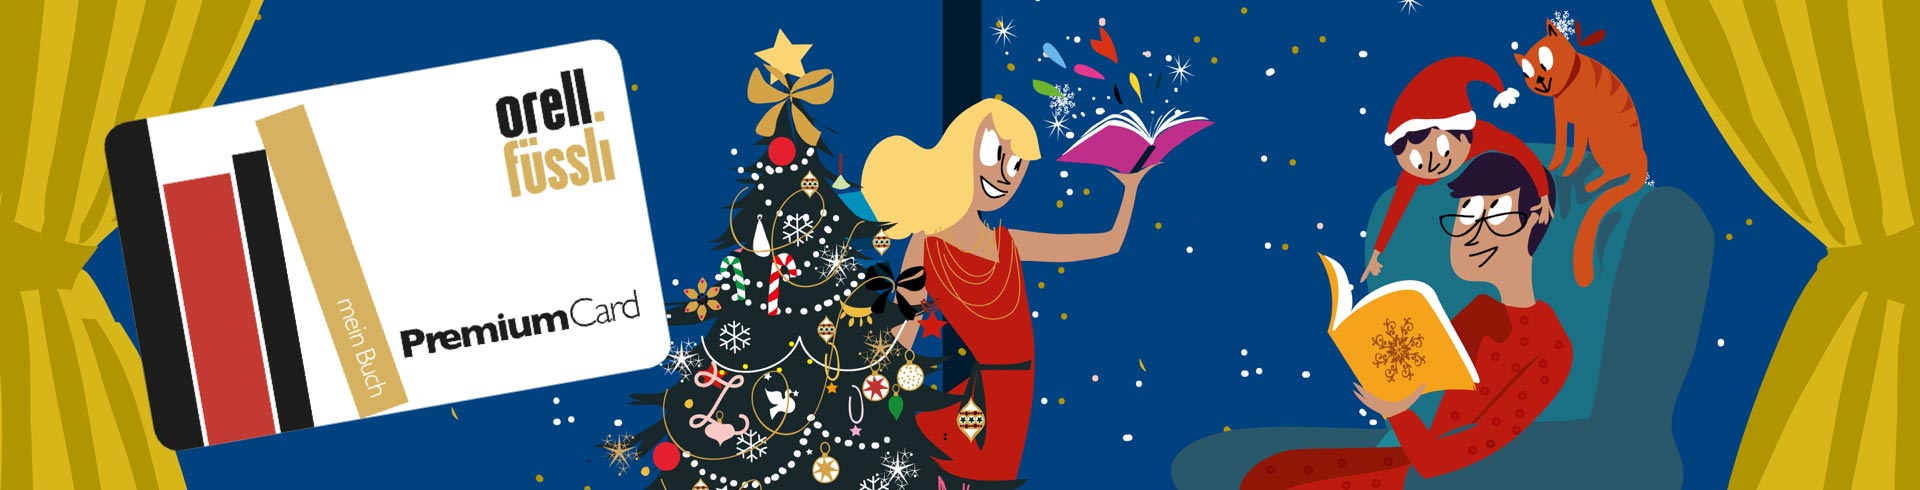 weihnachtliche Illustrationen und Premium Card von Orell Füssli